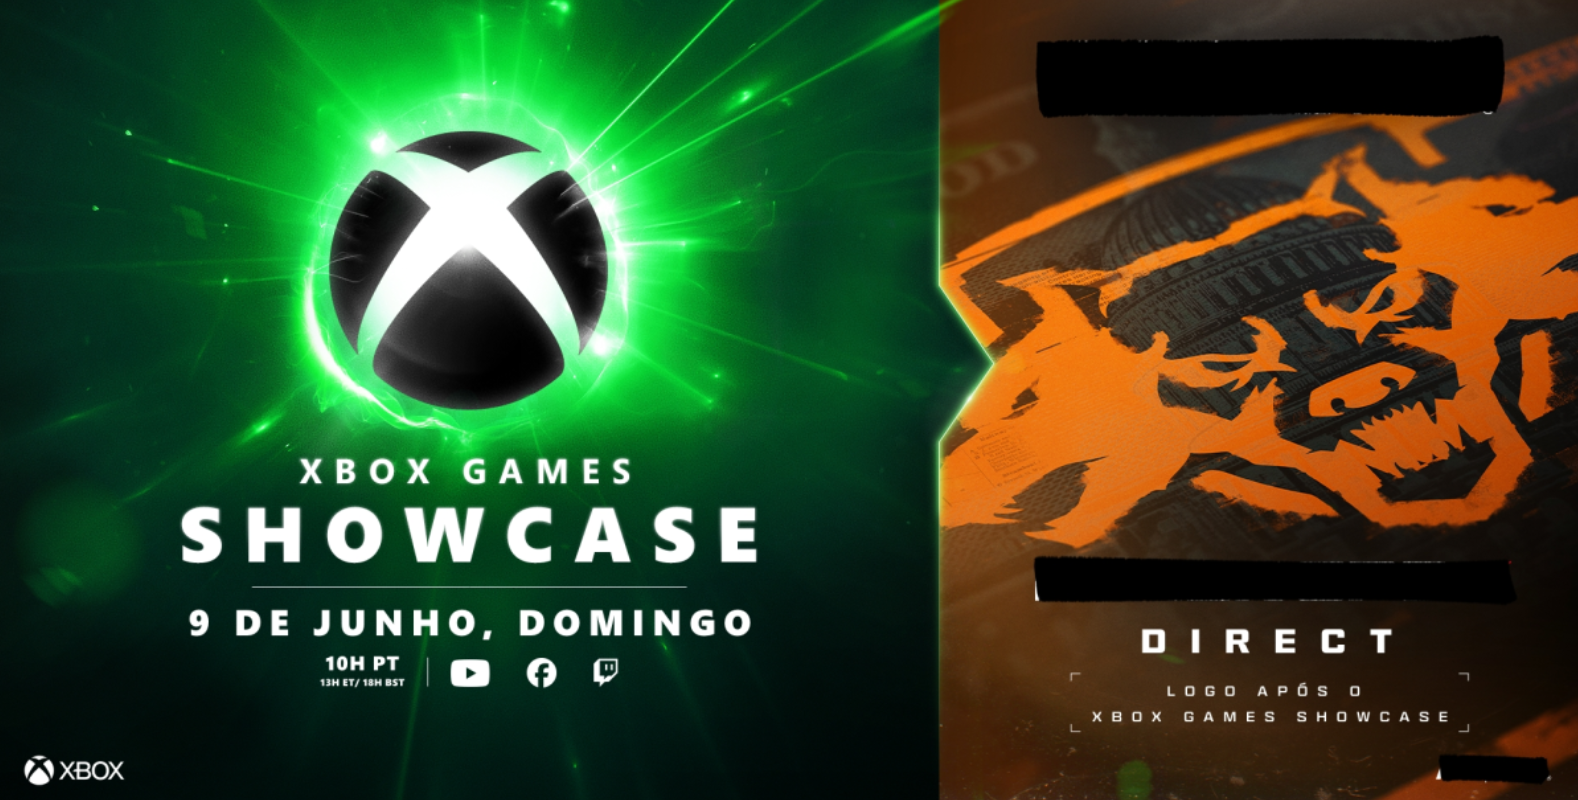 Jogos: Novo Xbox Games Showcase e Direct misterioso acontecerão em 9 de junho